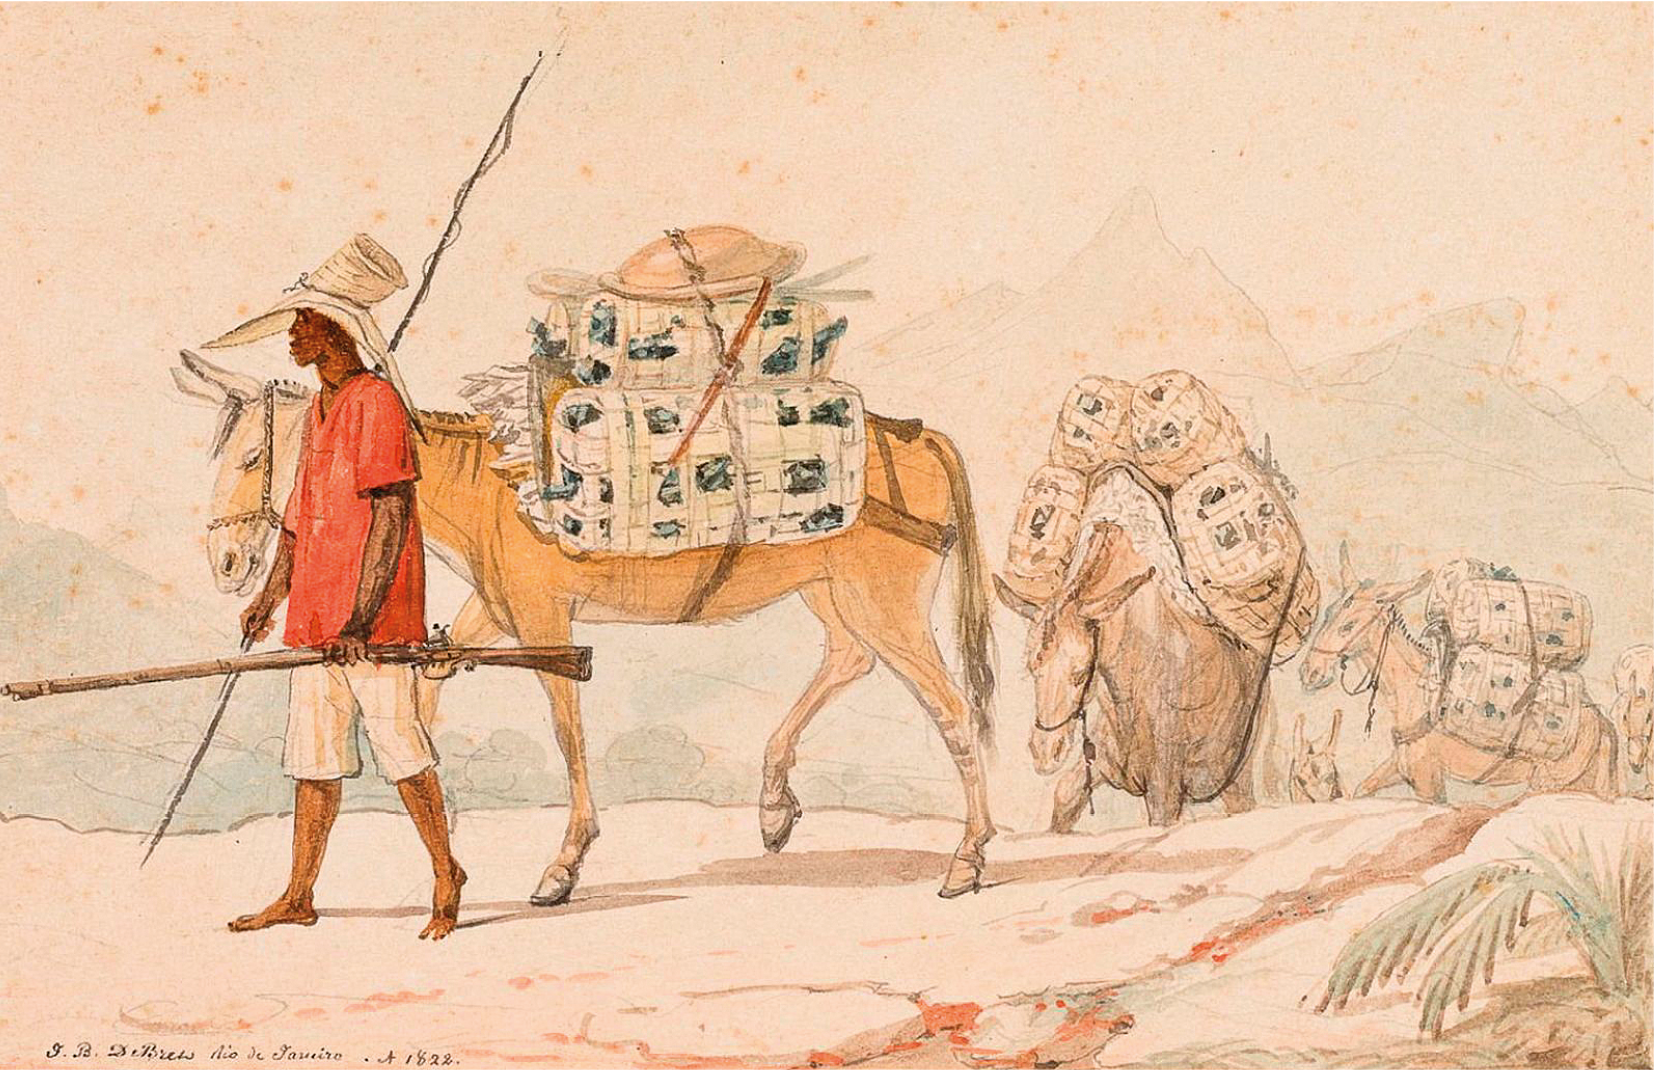 Gravura. Um homem em pé sobre um campo terroso, descalço, vestindo uma camisa vermelha, uma bermuda clara e um chapéu com largas abas na cabeça, portando uma lança e uma arma de fogo, guiando uma fila de mulas carregando pacotes contendo pedras escuras.